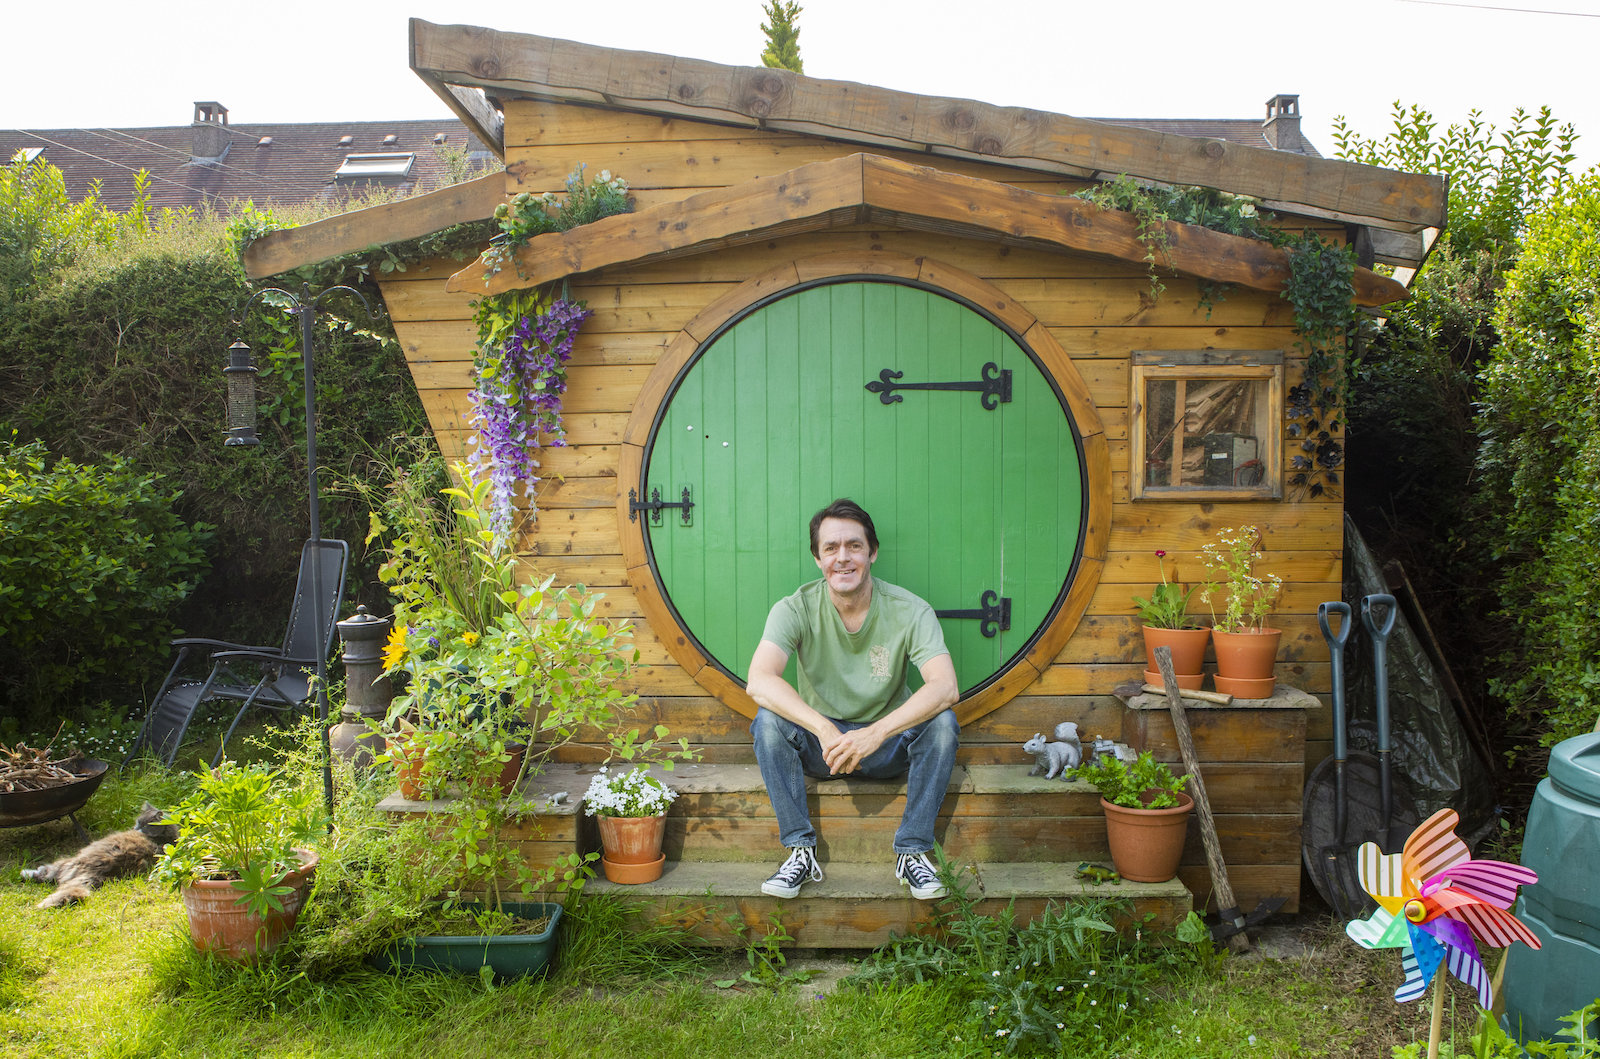 Man builds hobbit home in backyard